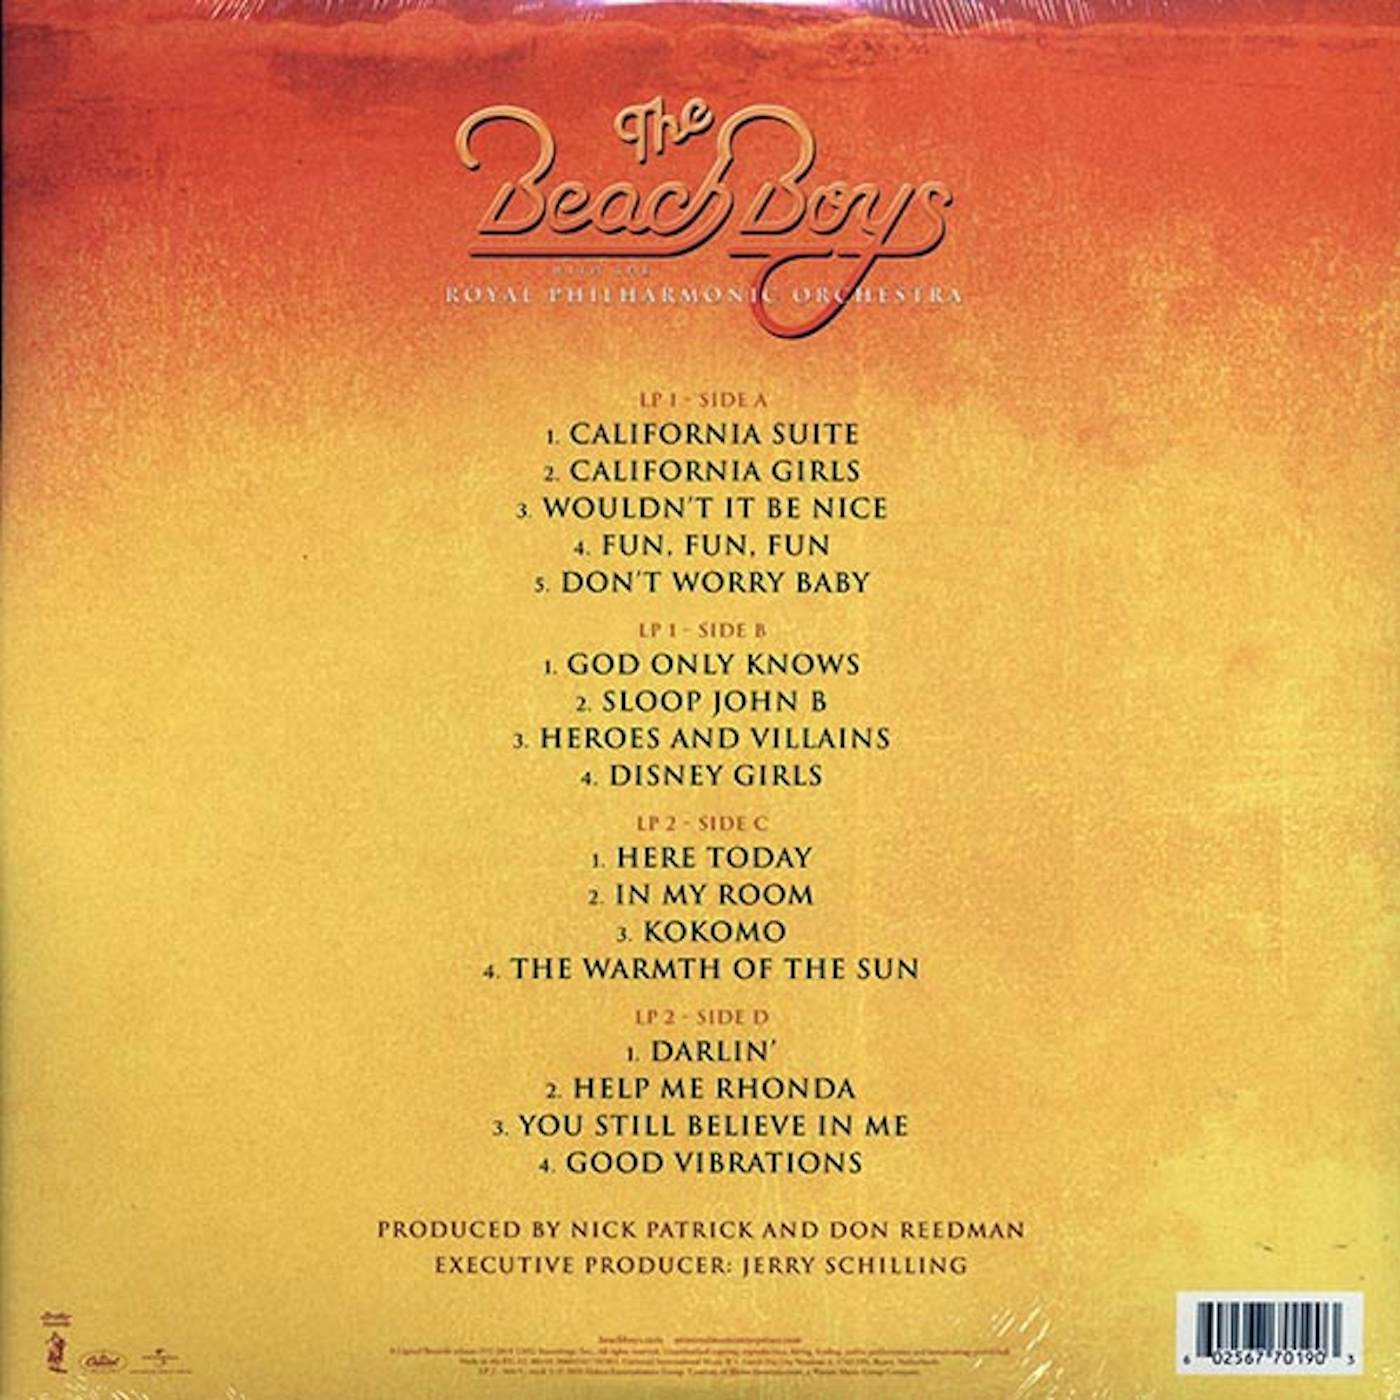  The Beach Boys, The Royal Philharmonic Orchestra  LP -  The Beach Boys With The Royal Philharmonic Orchestra (2xLP) (180g) (Vinyl)